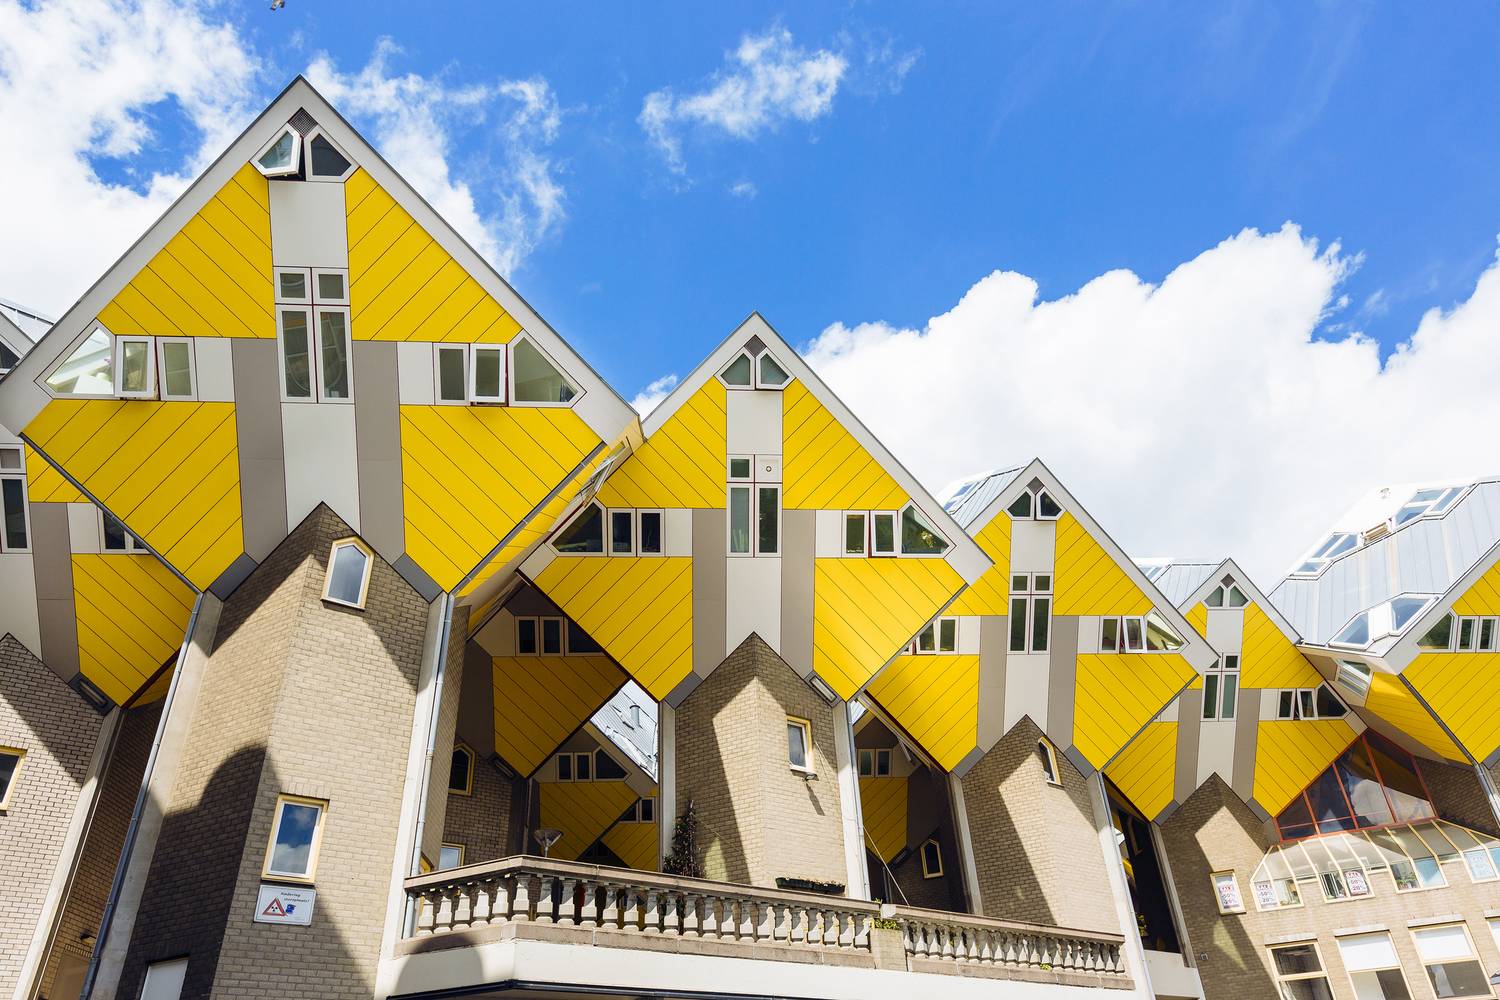 Az 55 fokban megdöntött kockaházakat Rotterdamban építette Piet Blom holland építész az 1970-es években. Az élénksárga házak többségében ma is élnek, lépcső vezet az első emeletre, ahol a konyha, a nappali és étkező van, míg a másodikon két hálószoba és a fürdő található.